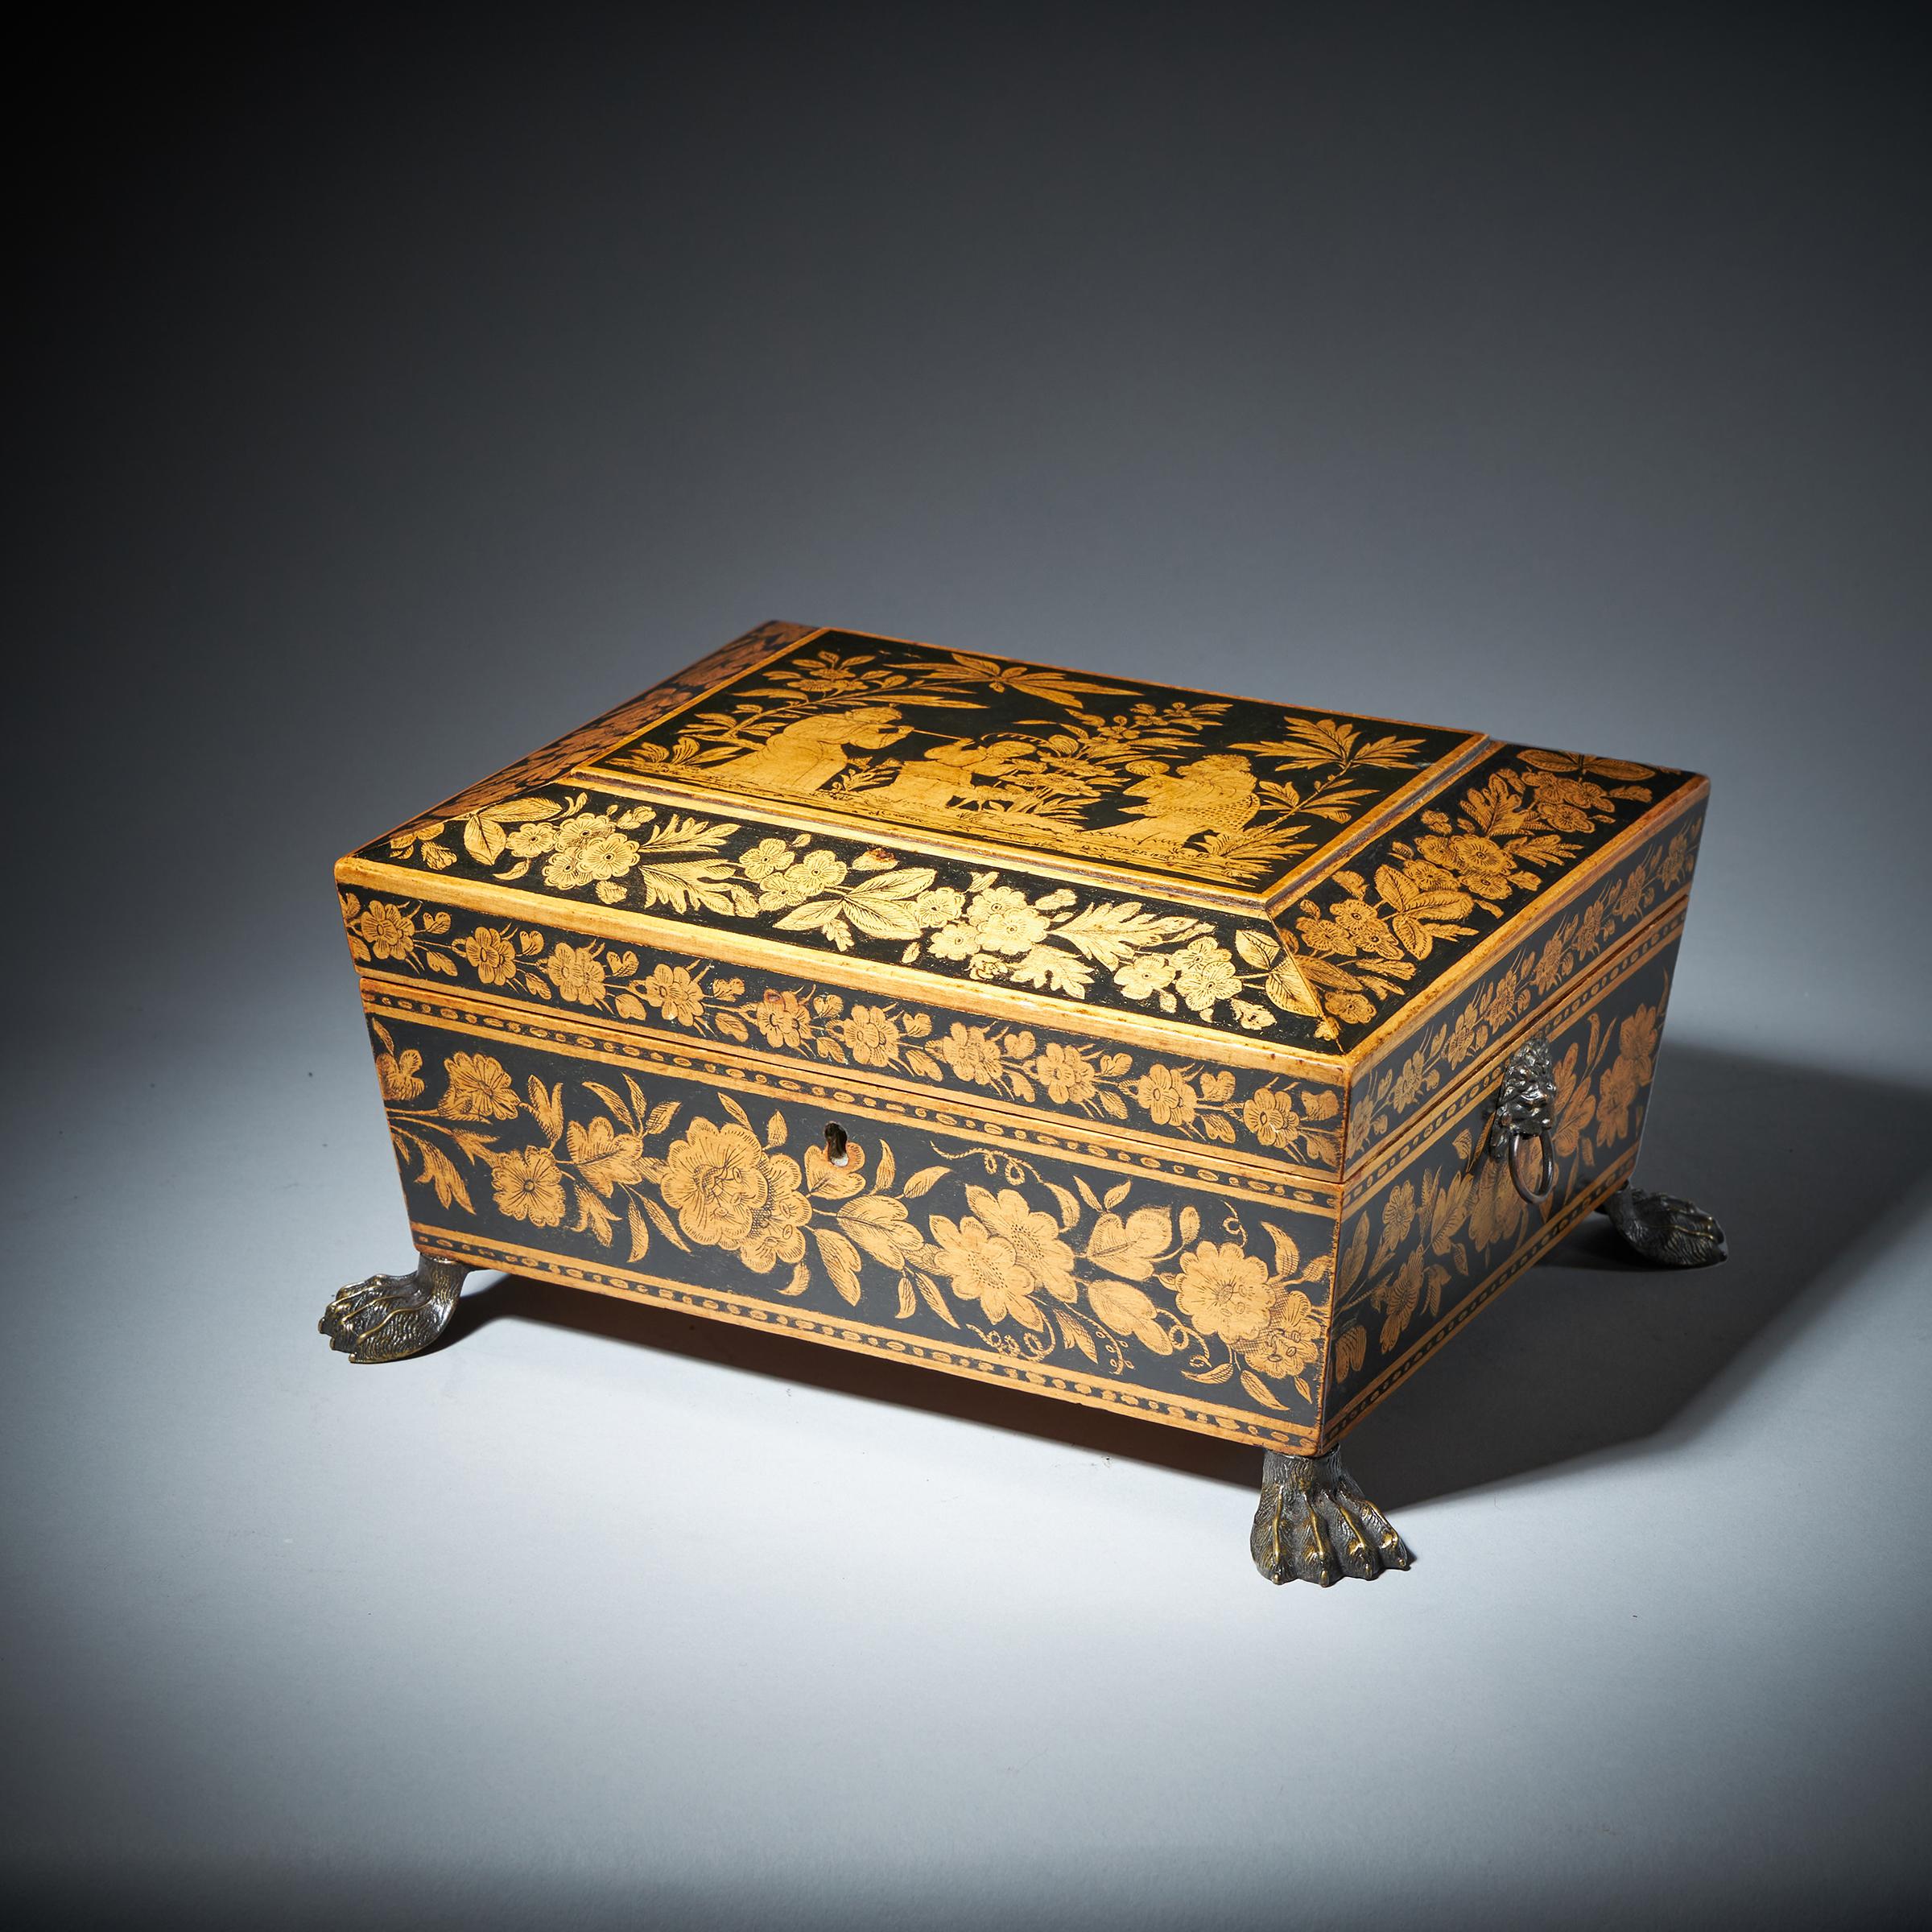 Un coffret à bijoux exemplaire de George III en chinoiserie et à motifs floraux, daté de 1816. 

Ce superbe exemplaire en parfait état est incroyablement bien décoré sur du sycomore, représentant une frise florale bordée d'un cordon linéaire,